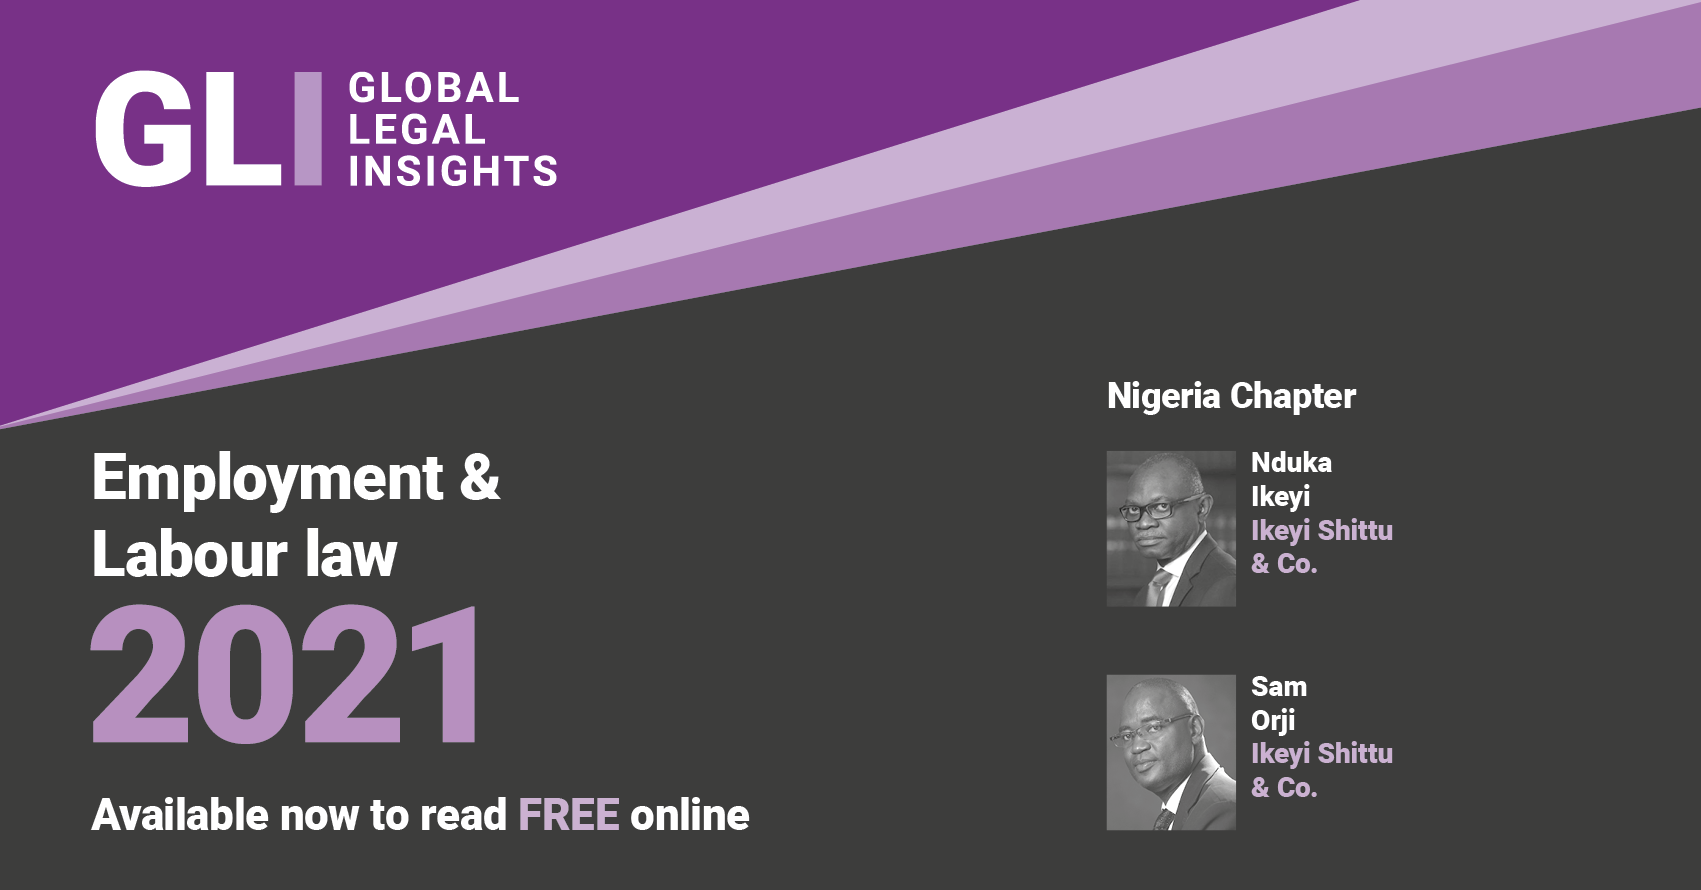 GLI - Employment and labour law 2021 - Nigerian chapter by Nduka Ikeyi and Sam Orji